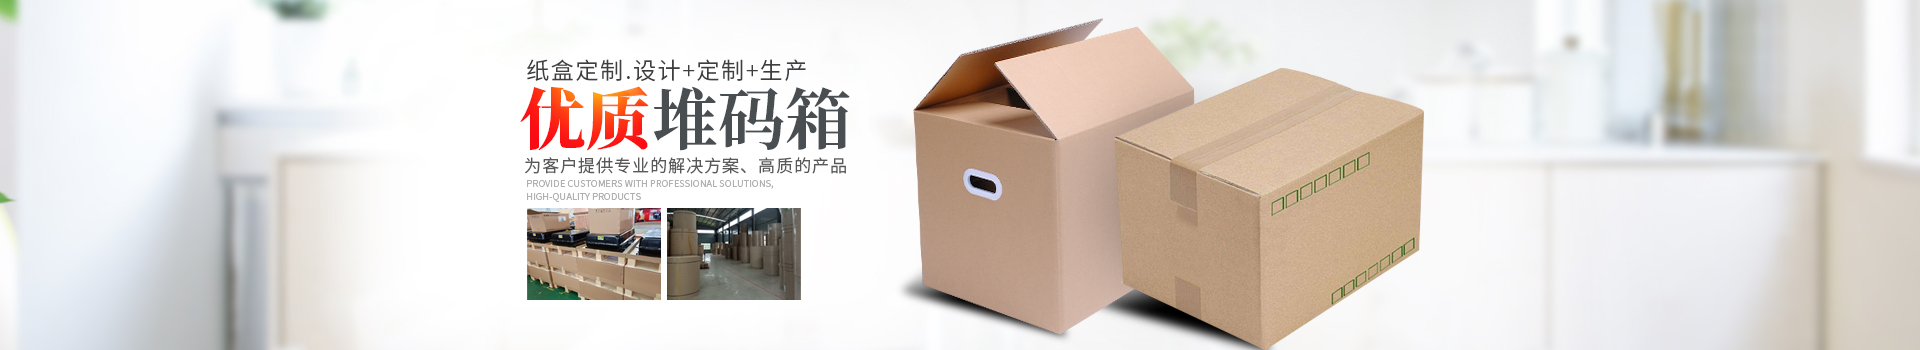 湖南省沐杉包裝有限公司_吸塑制品生產銷售|紙箱生產銷售|珍珠棉生產銷售